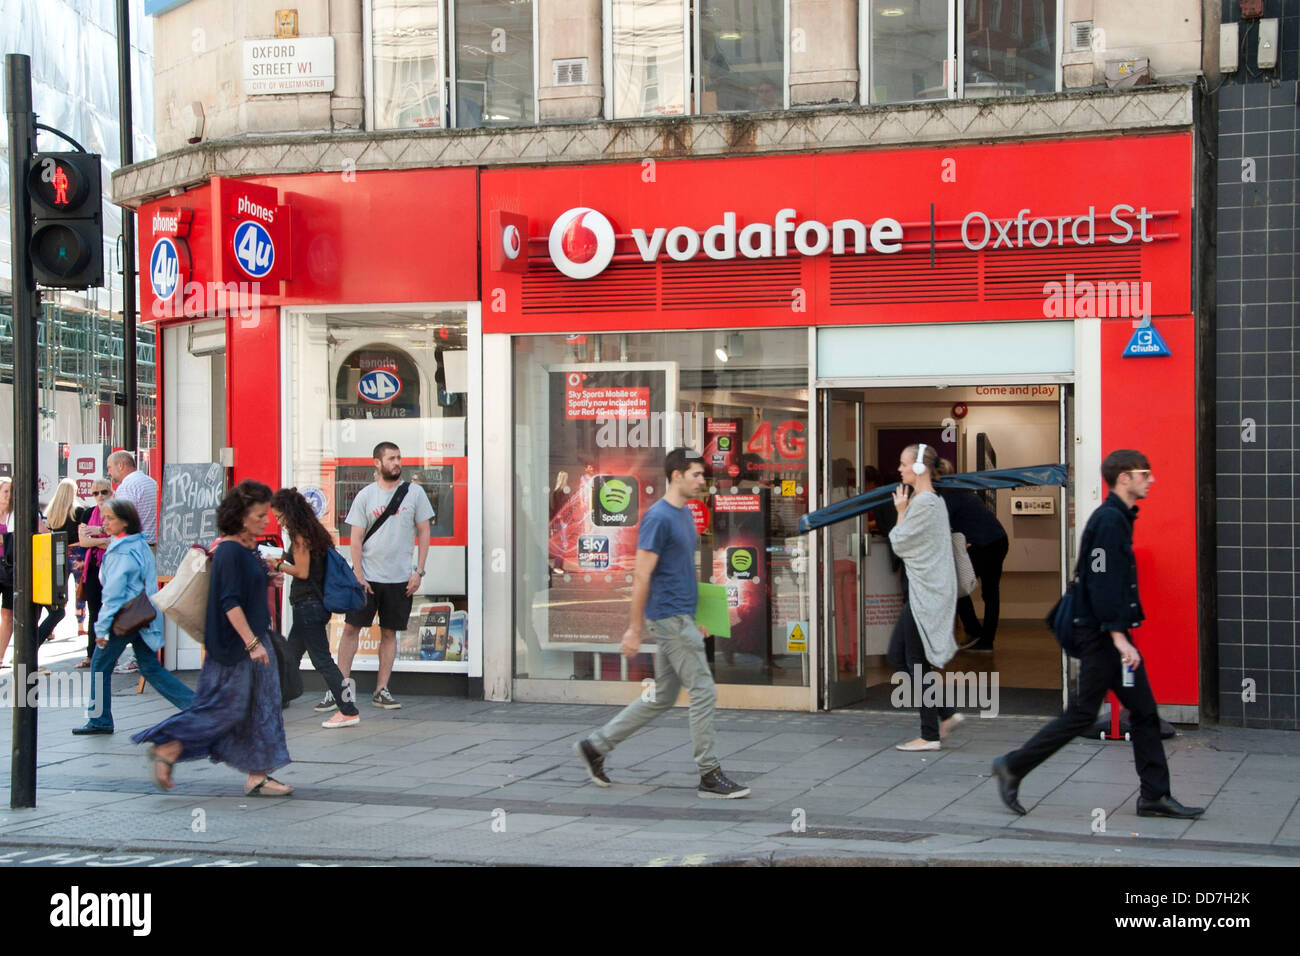 Londres, Royaume-Uni. Août 28, 2013. La boutique Vodafone sur Oxford Street. Le 29 août 4G Vodafone lance son service aux clients de Londres. L'entreprise a investi 900 millions € dans le réseau. Vodafone a l'intention de déployer le service à 12 autres villes y compris Sheffield, Leeds et Manchester avant la fin de 2013. Les clients sur une carte SIM seulement 12 mois contrat devra payer 26 € par mois, 5 € de plus que la moyenne le service 3G. Credit : Pete Maclaine/Alamy Live News Banque D'Images